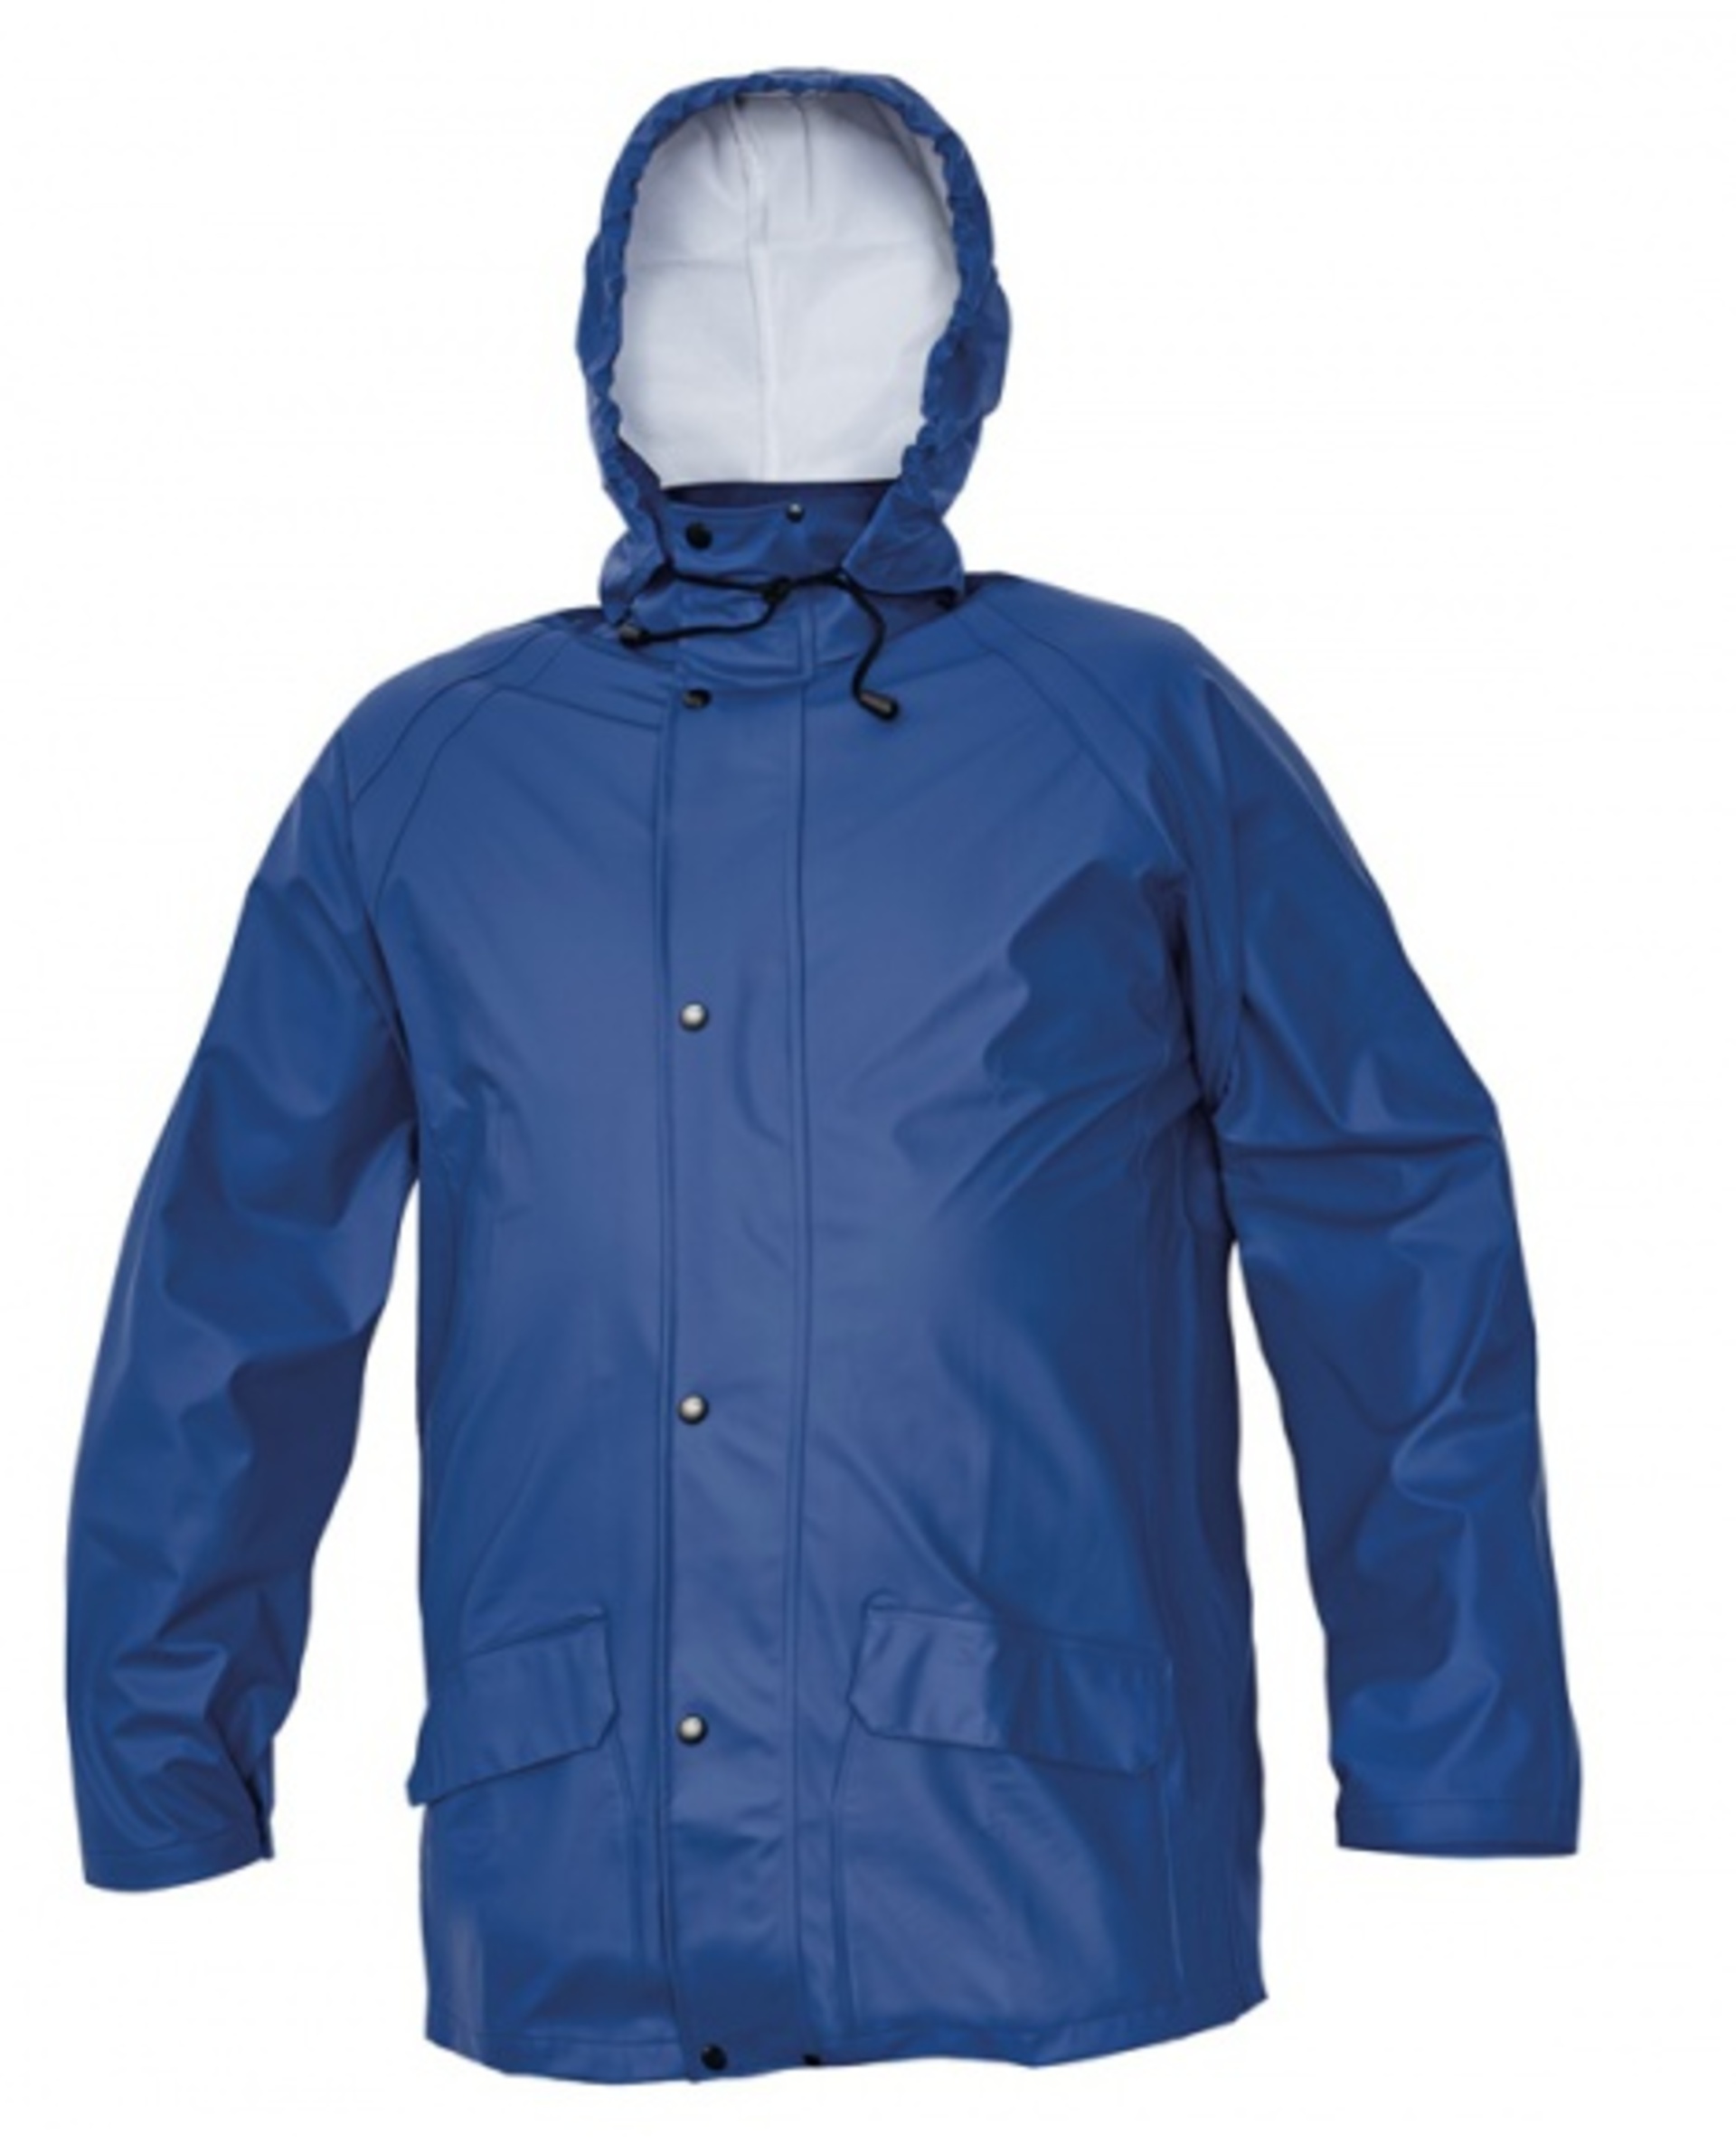 Cerva SIRET SET Oblek nepromokavý námořnická modrá M + Bezplatné vrácení zboží